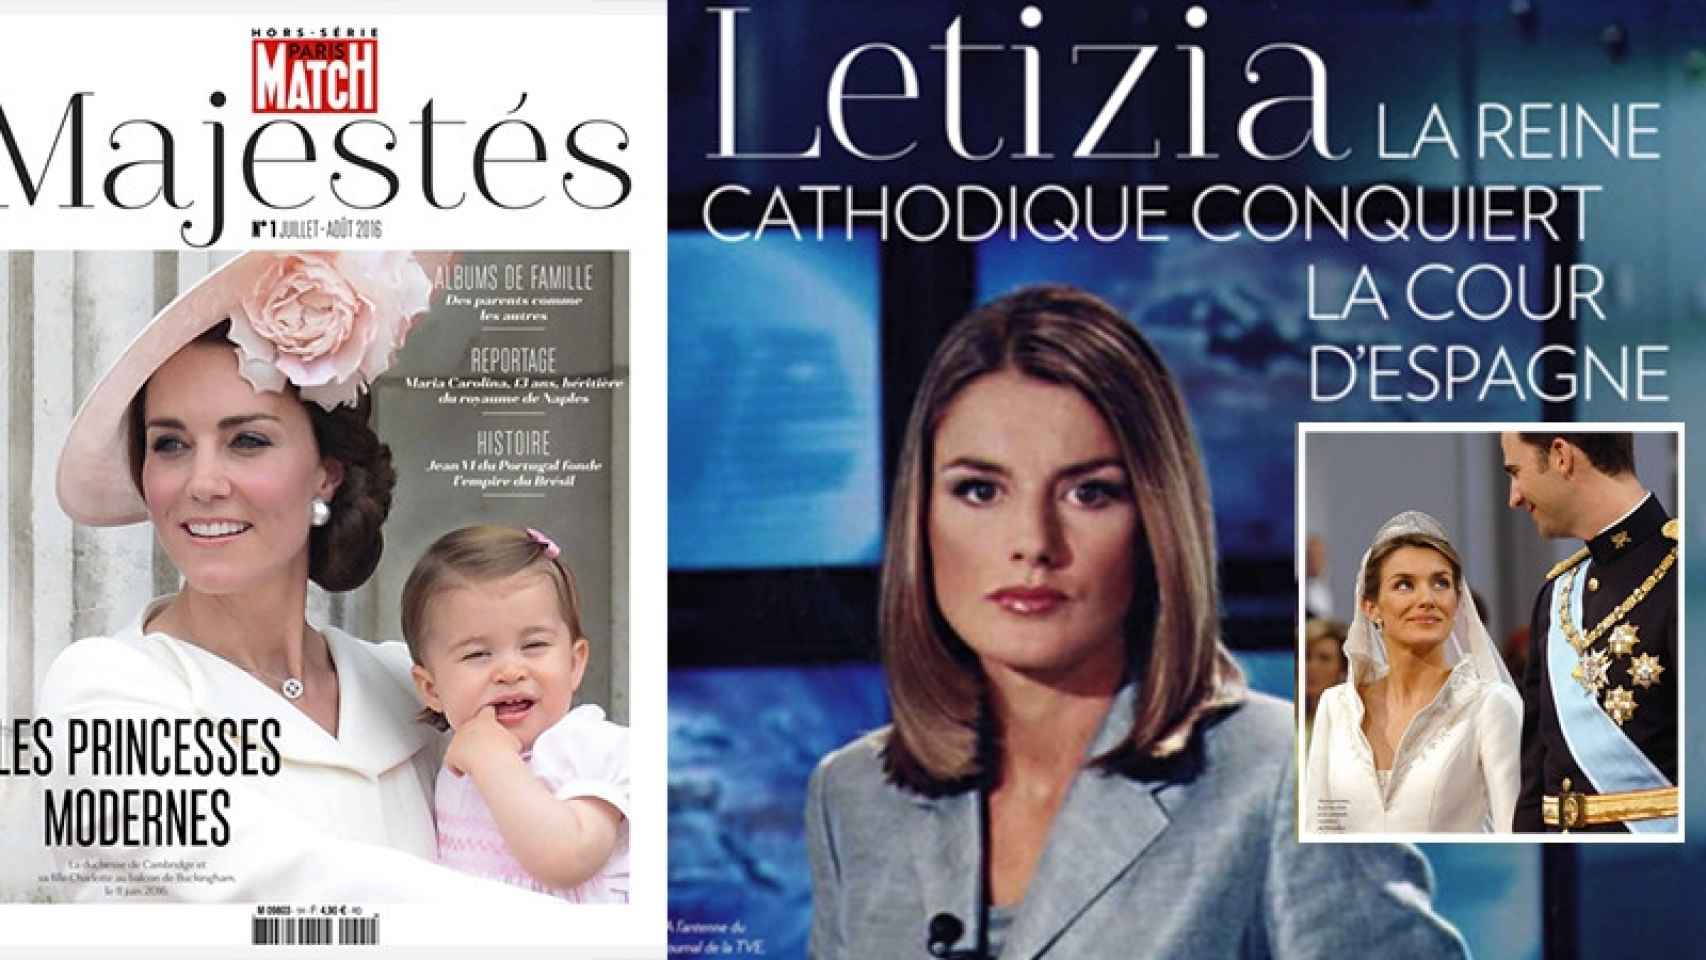 La reina Letizia en un reportaje sobre monarquía de Paris Match